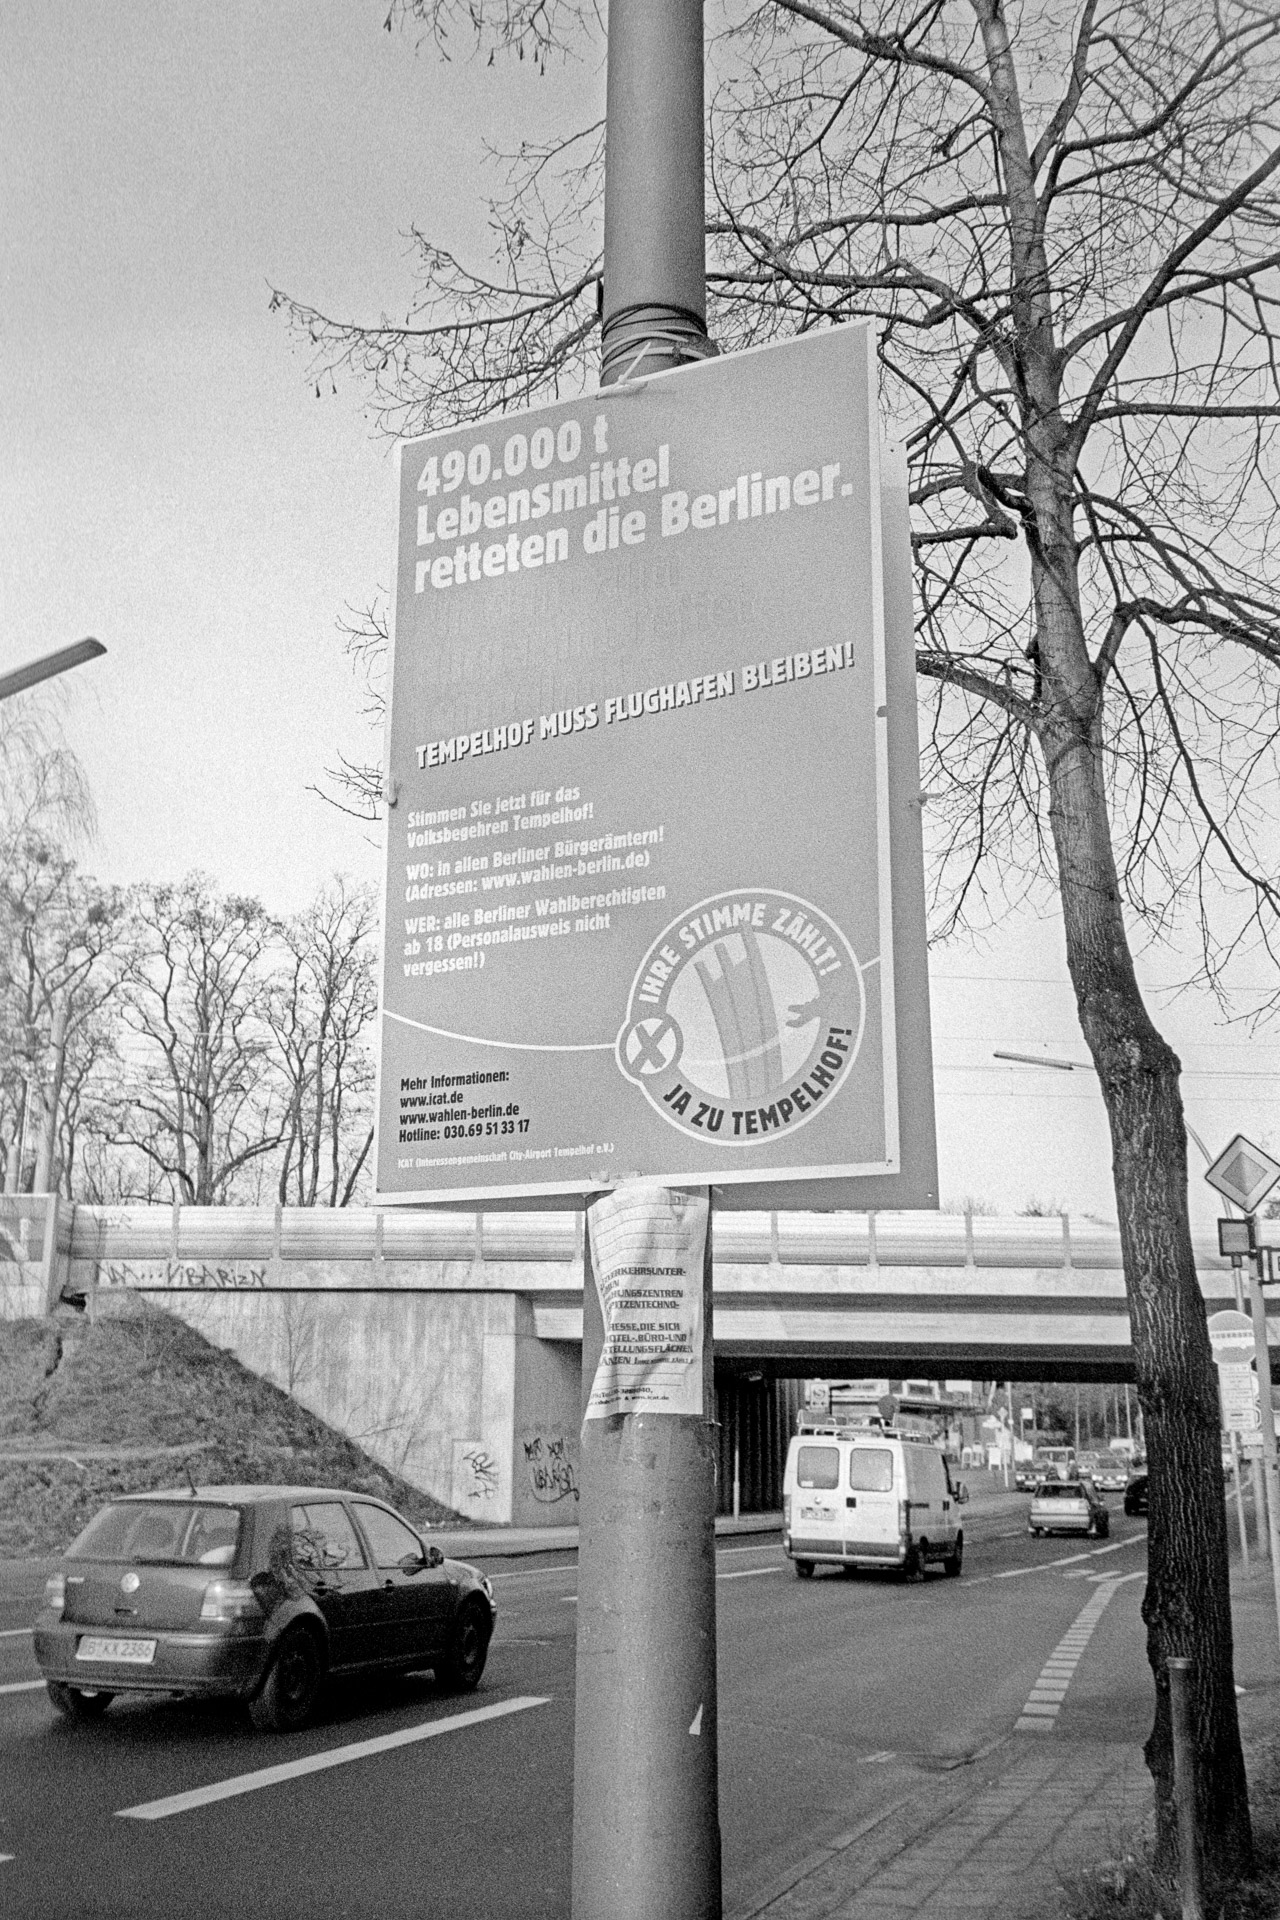 © Martin Frech: Werbeplakat für Volksbegehren, Leonorenstraße, Berlin-LankwitzIlford HP5+, E. I. 27° DIN, BKA Diafine